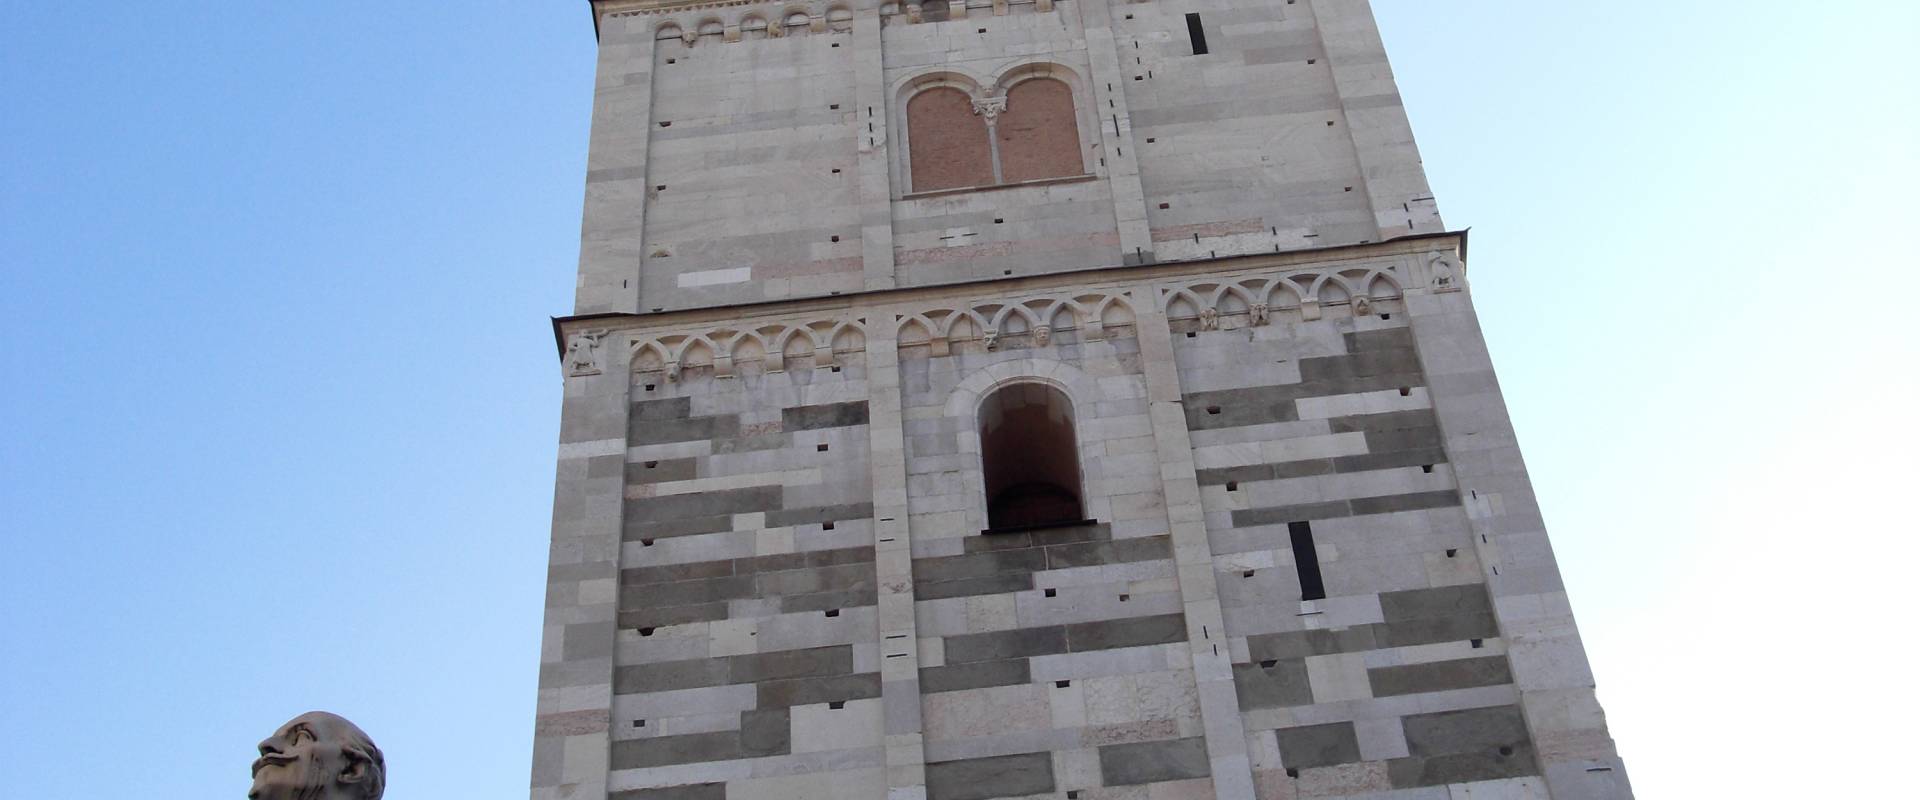 Torre Ghirlandina di Modena dal basso 2 foto di Matteolel